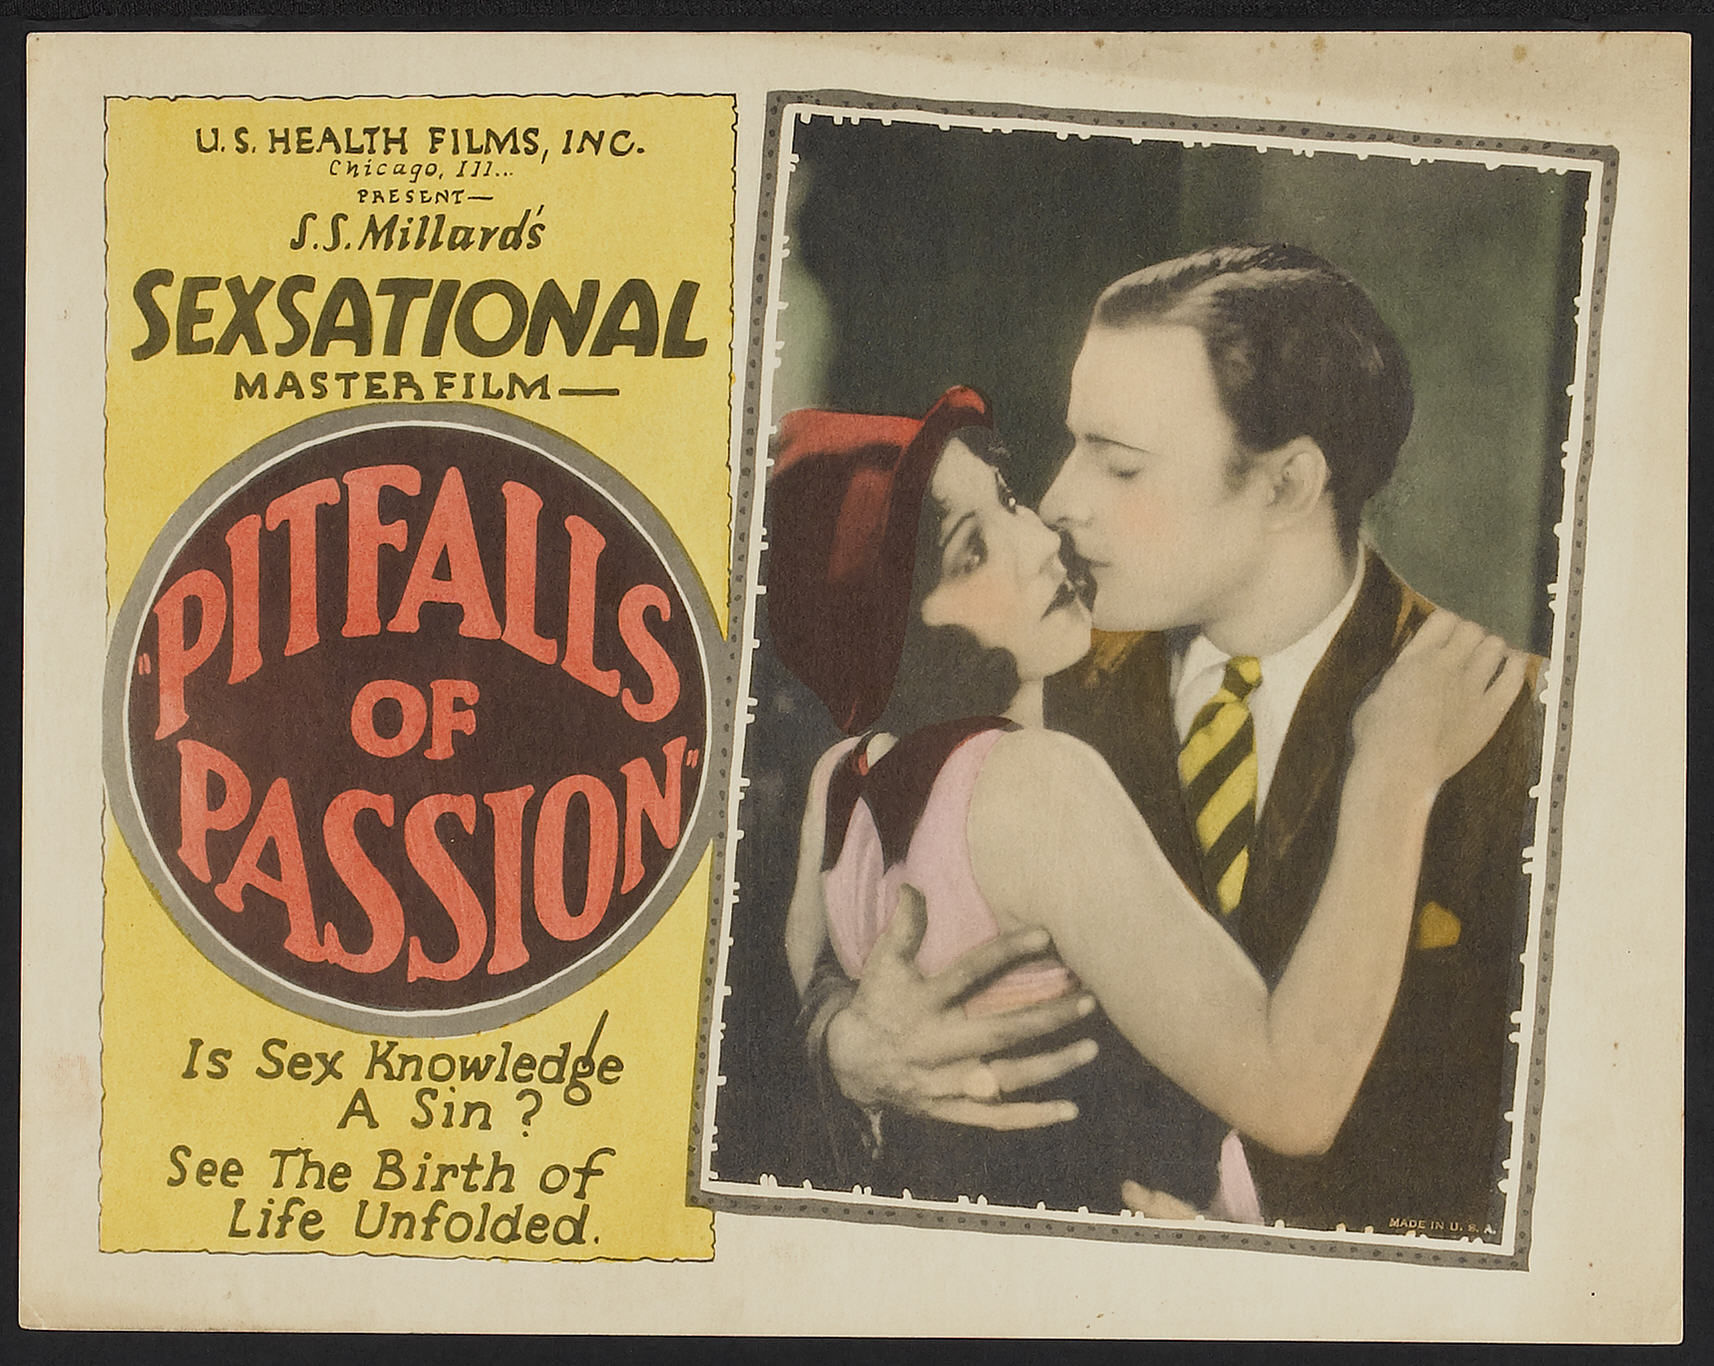 Pitfalls of Passion